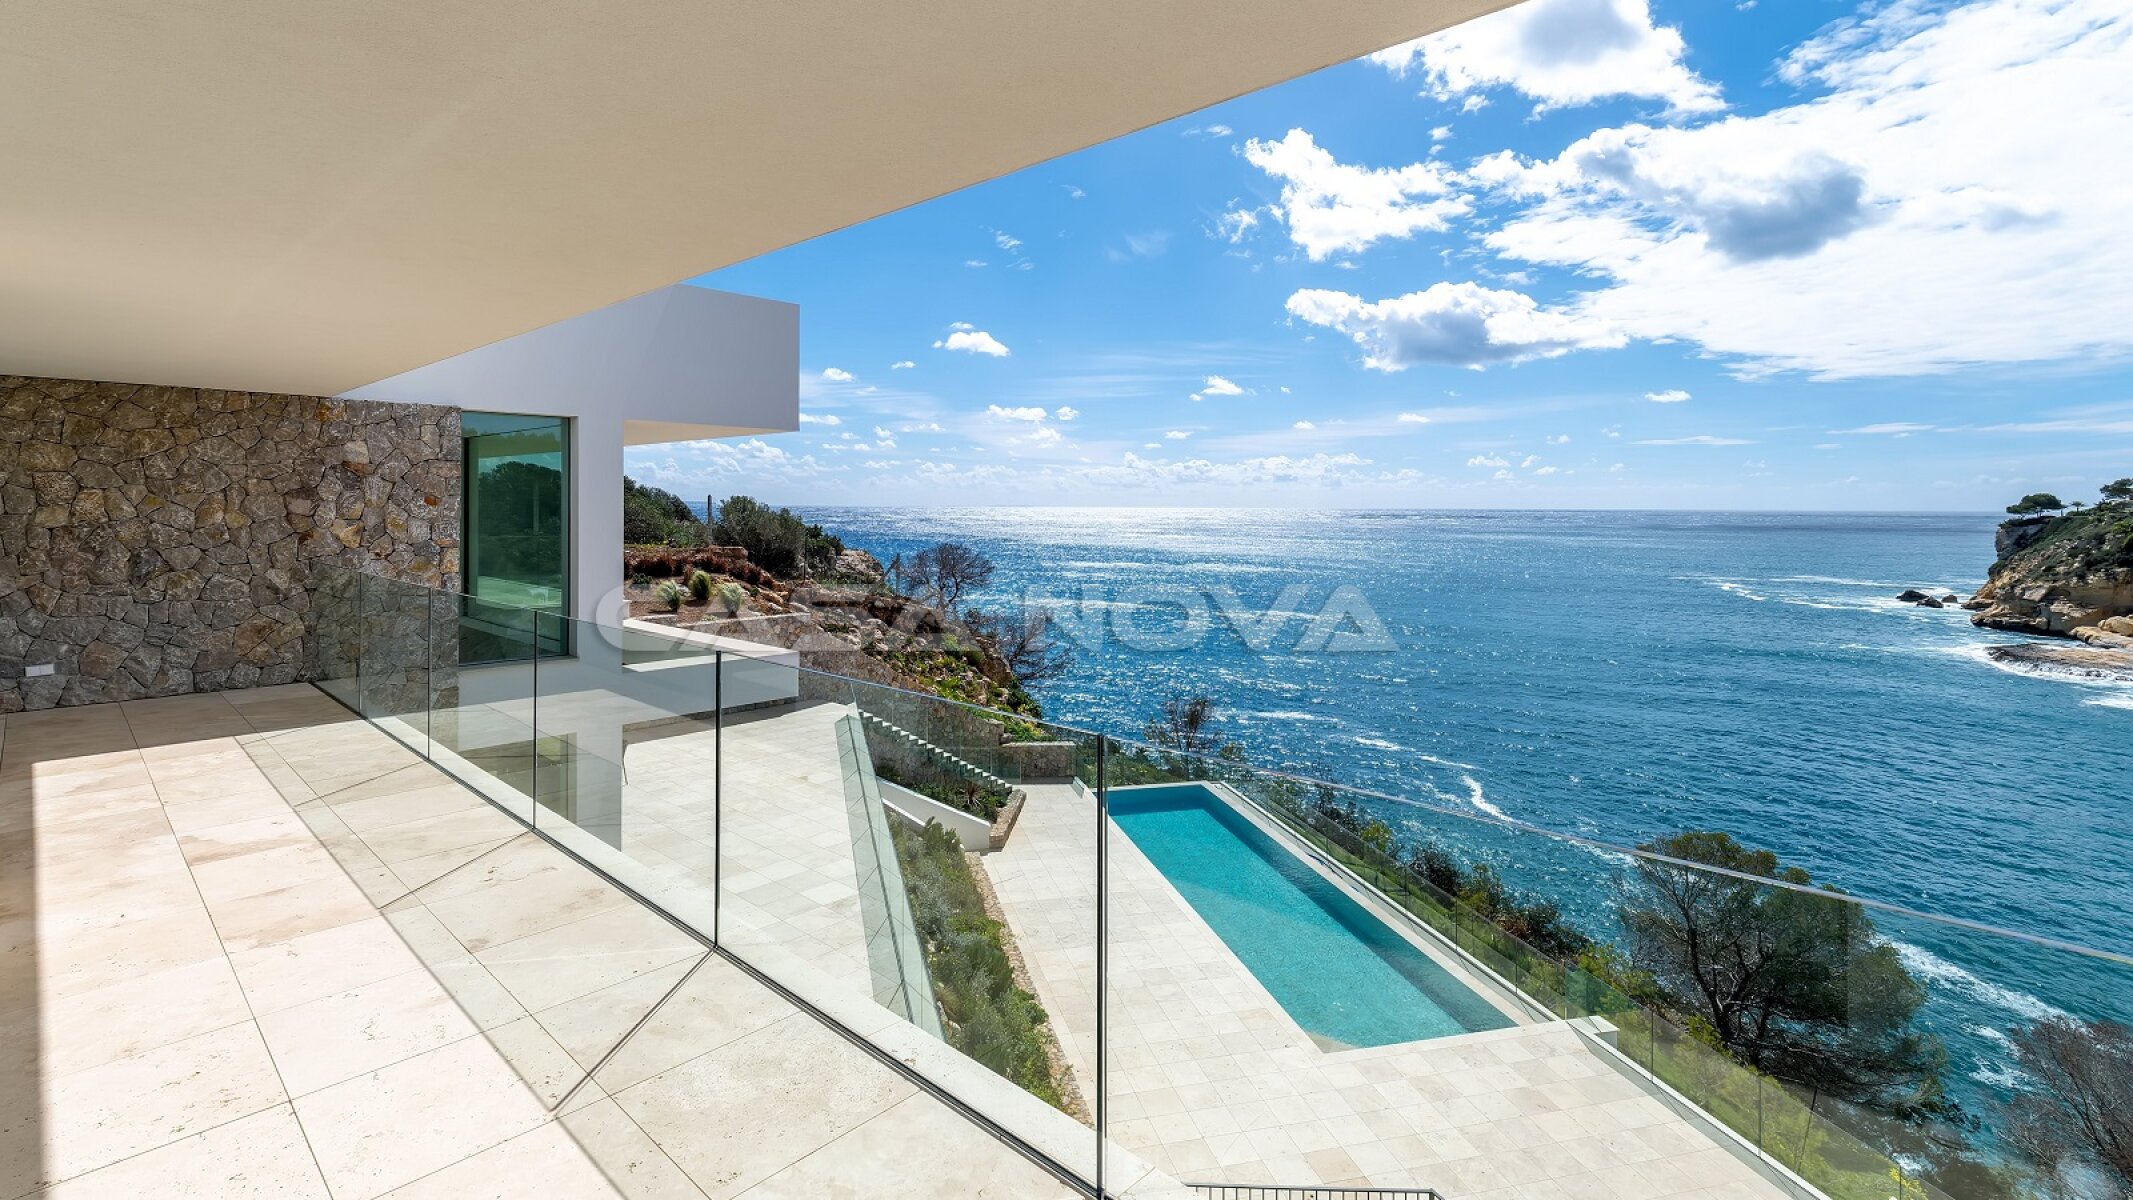 Villa de obra nueva con impresionantes vistas y acceso al mar